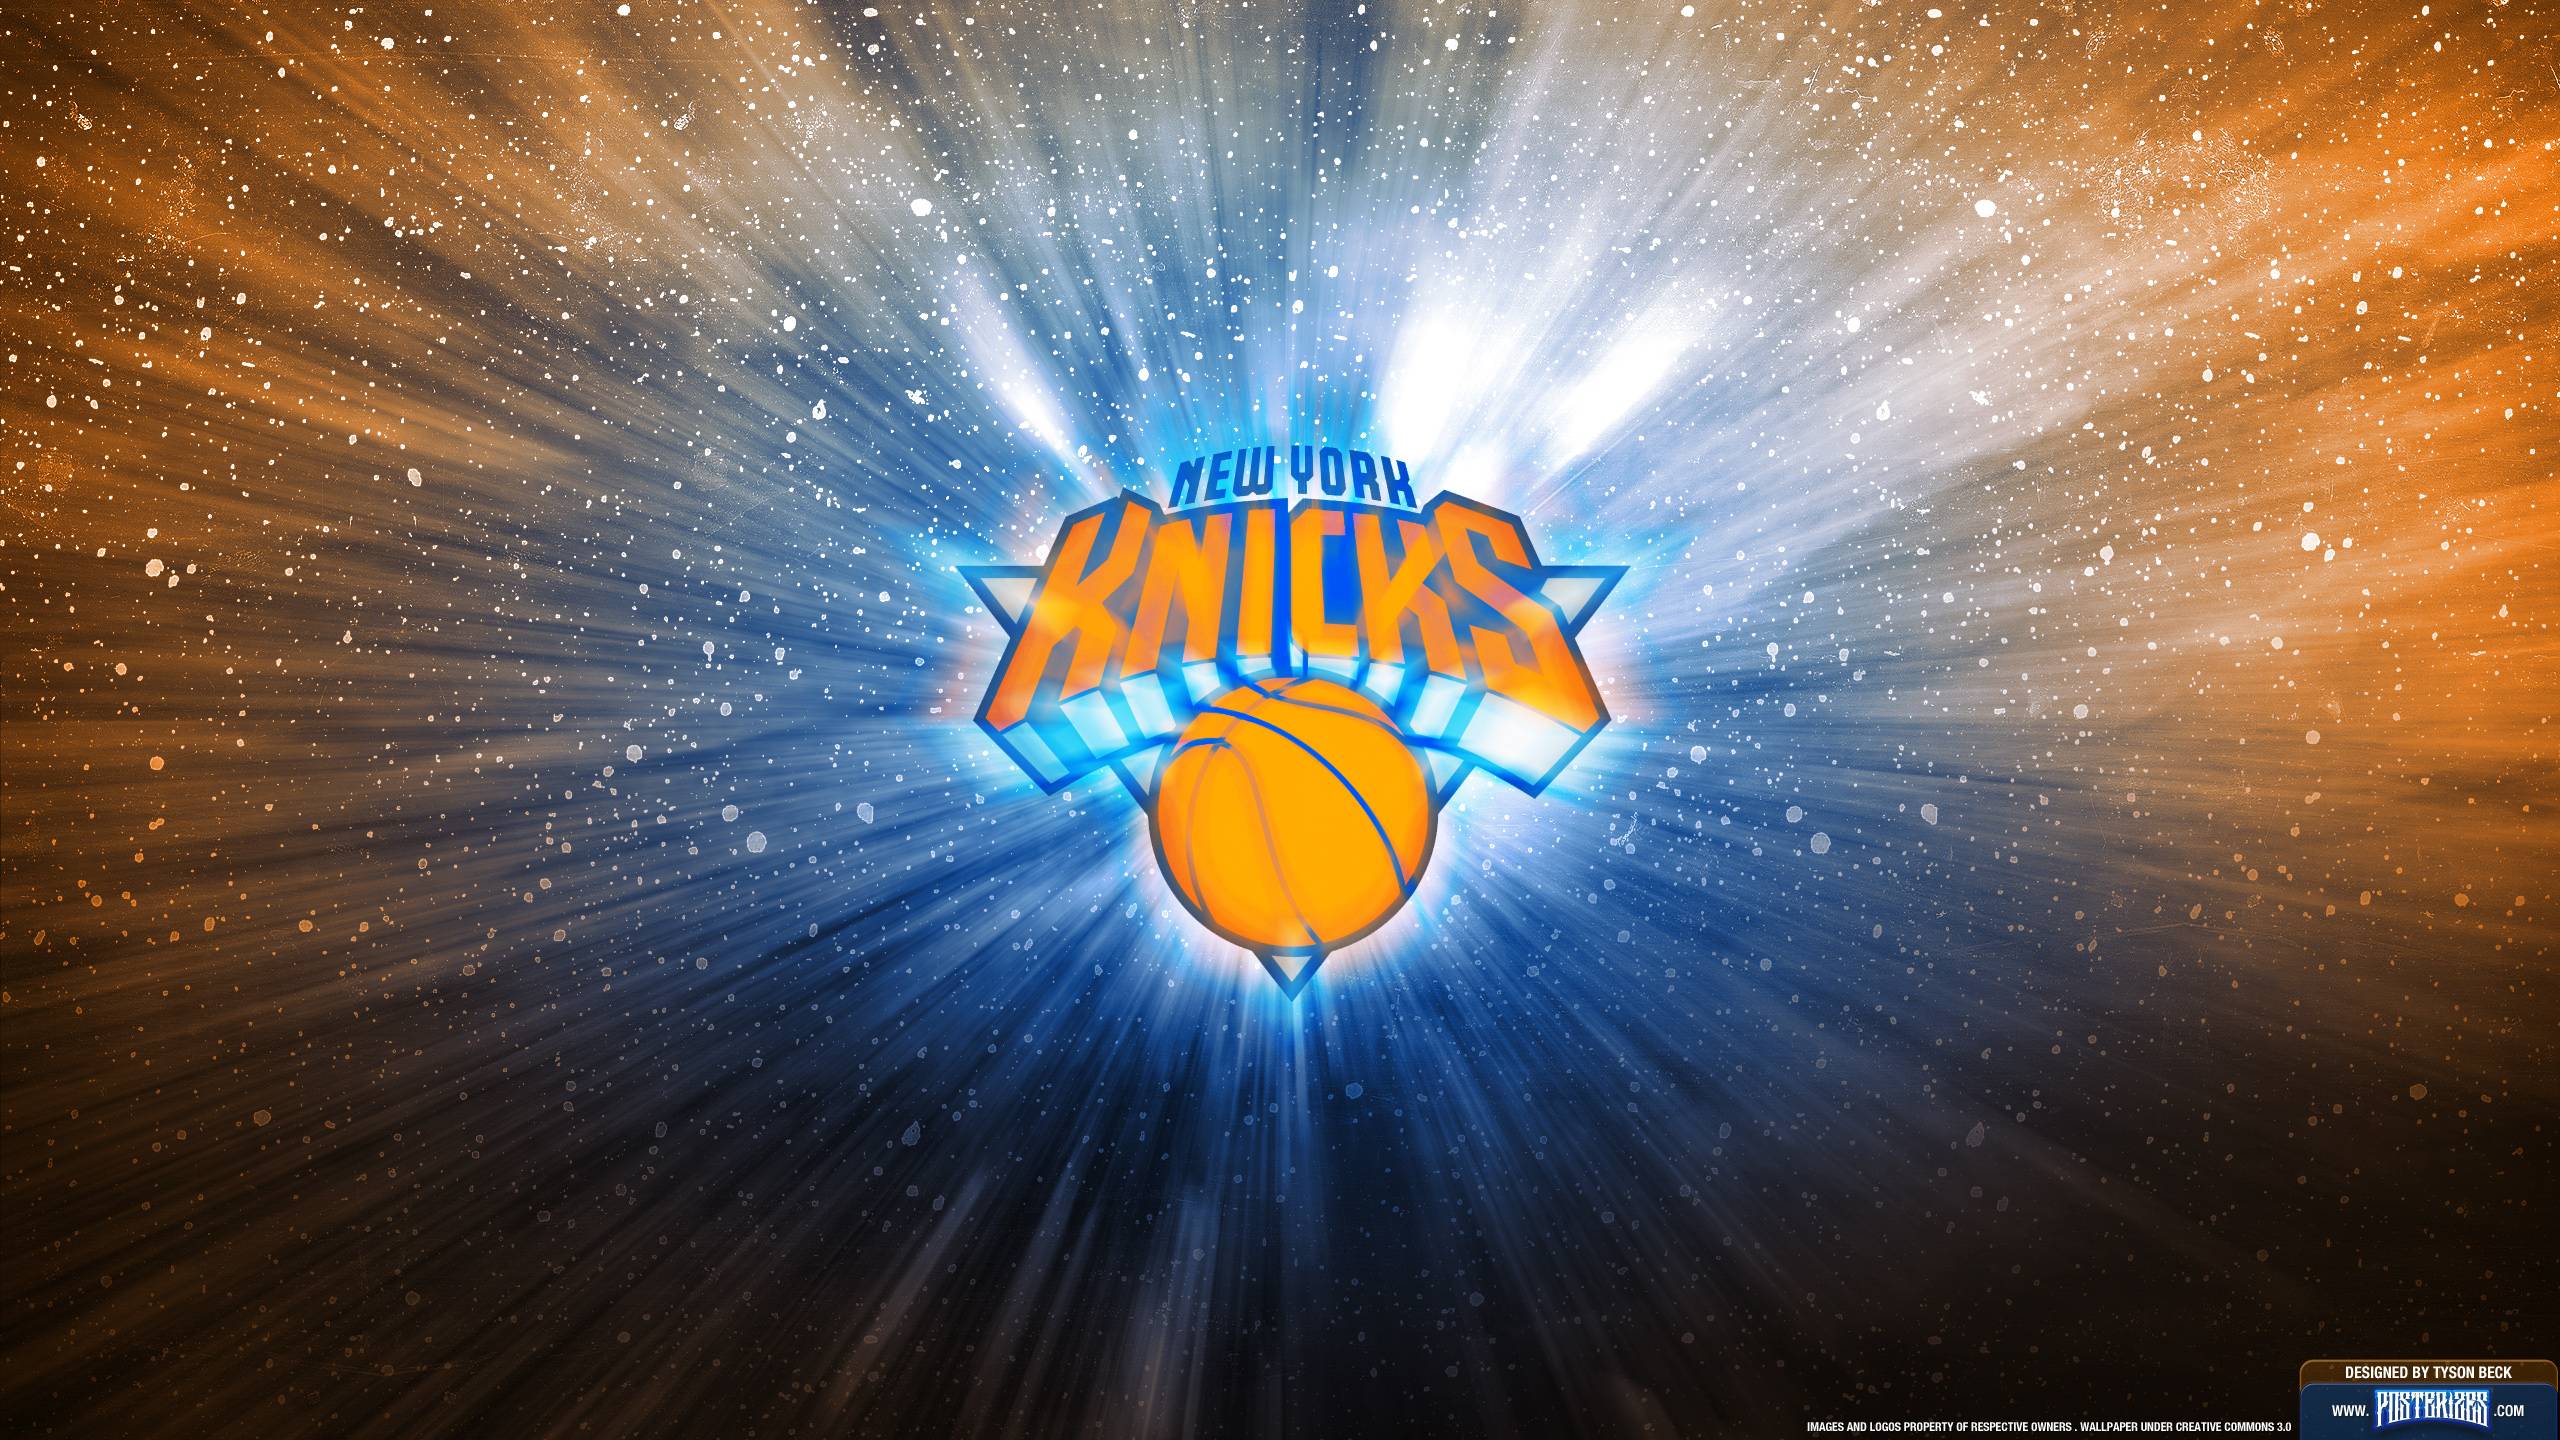 Knicks Wallpaper In Brands Logos